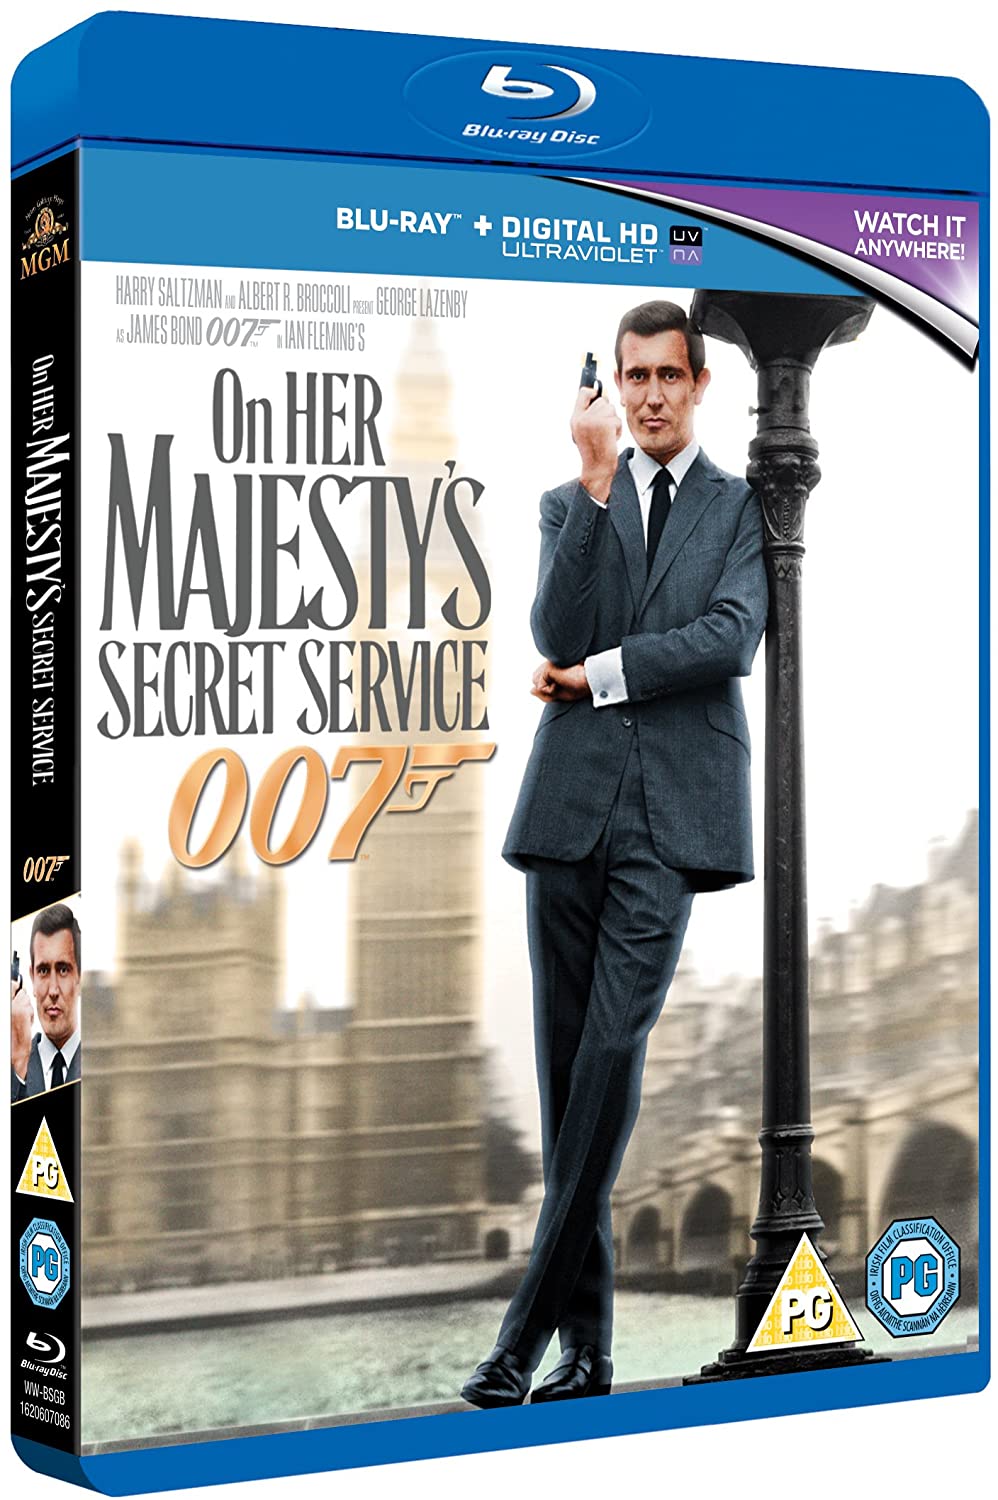 On Her Majesty's Secret Service [1969] - Action/Romance [Blu-ray]